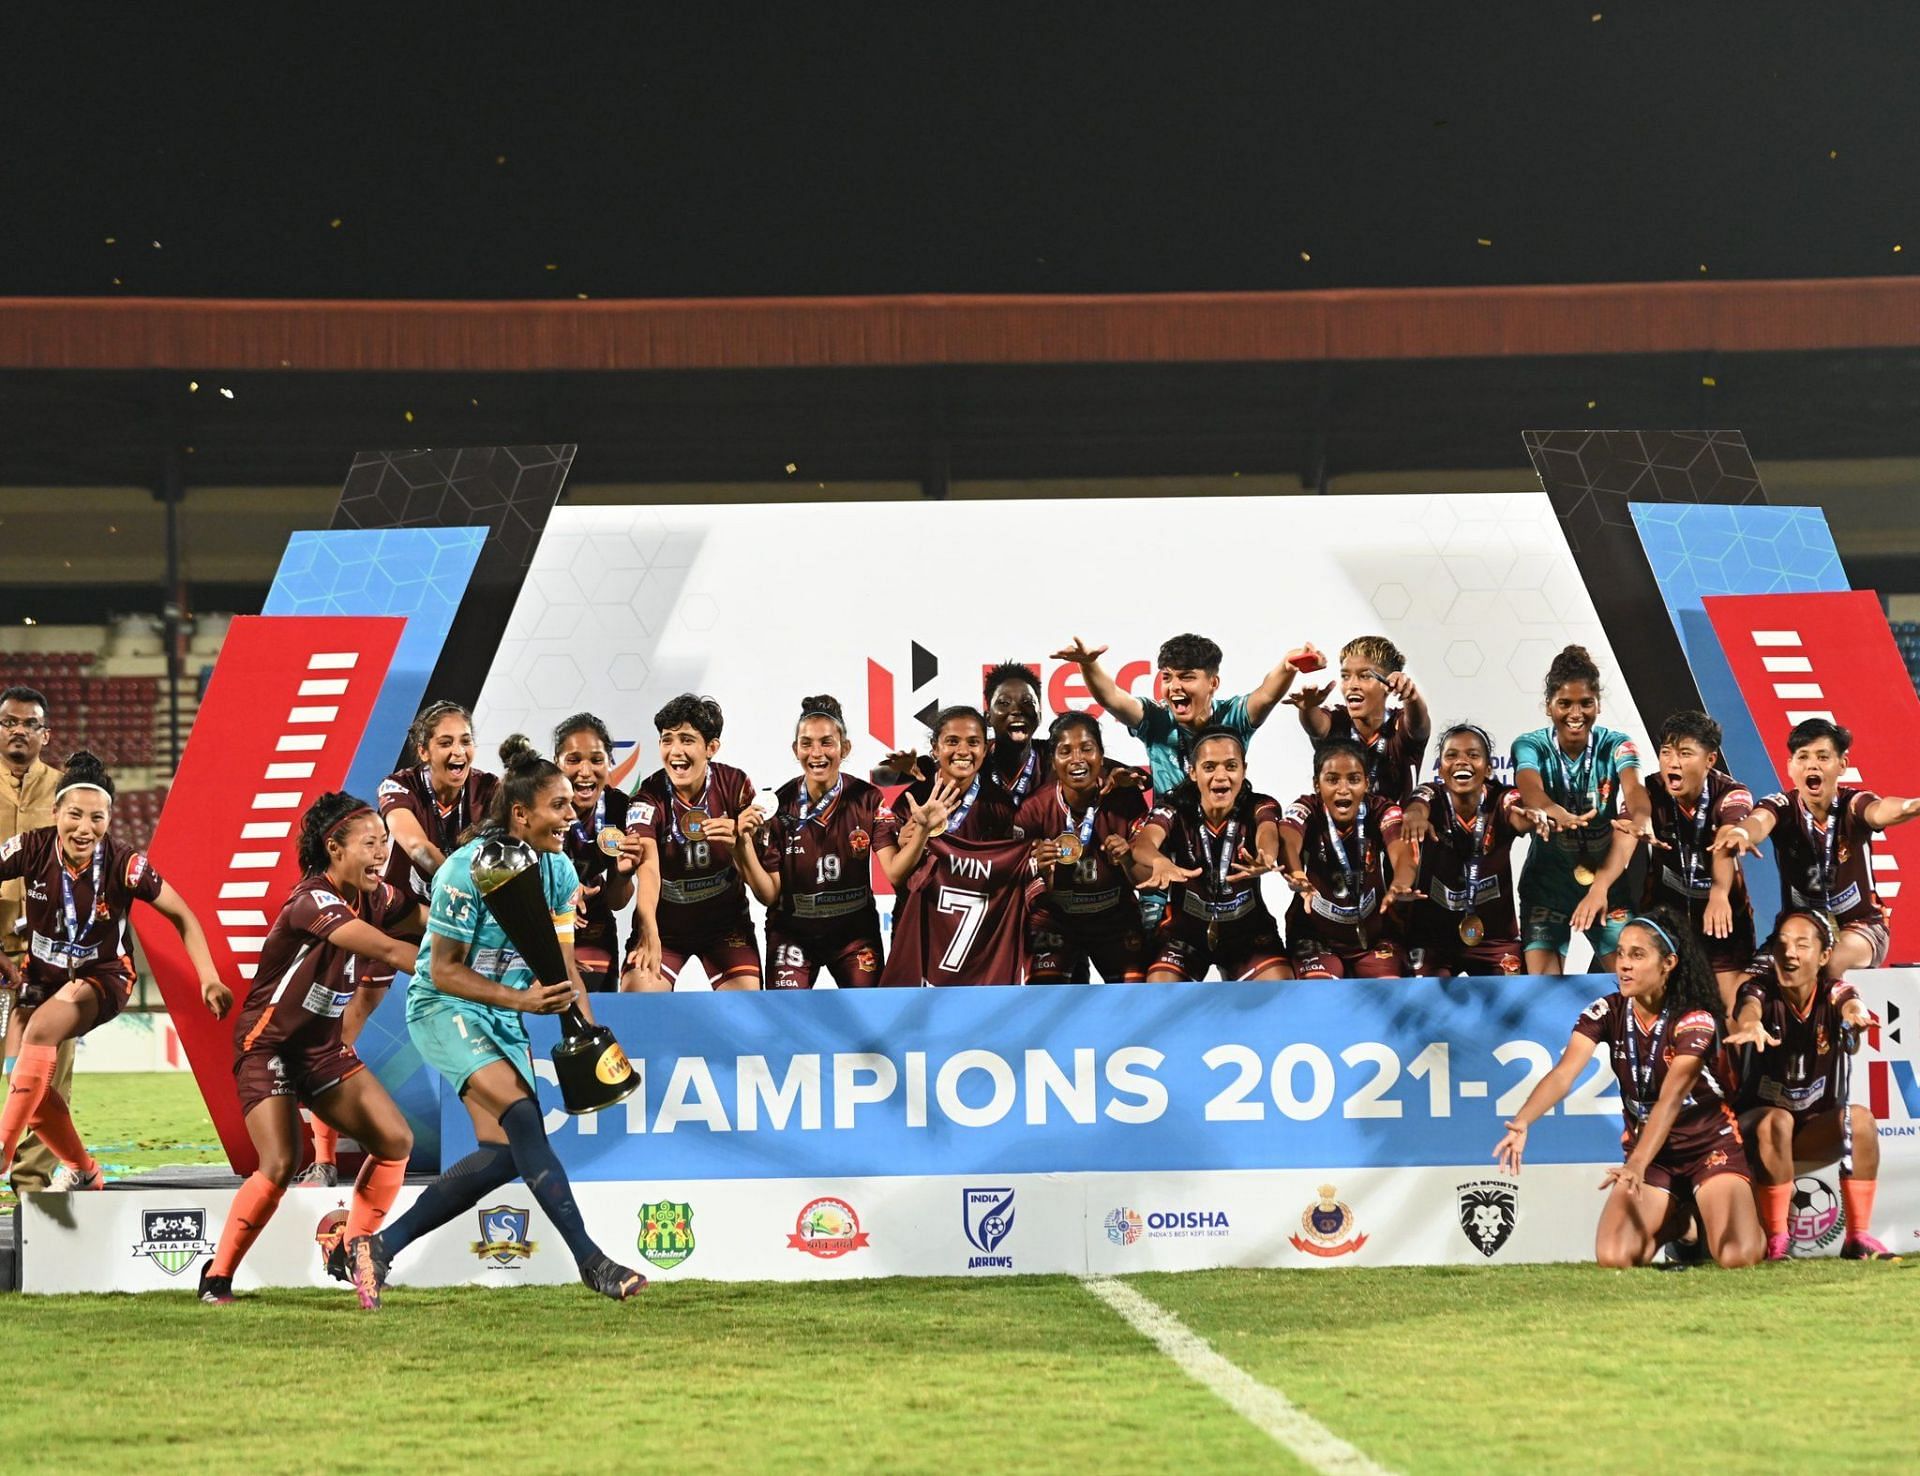 Gokulam Kerala FC players celebrating after winning the IWL 2021-22 title. (Image Courtesy: Twitter/GokulamKeralaFC)